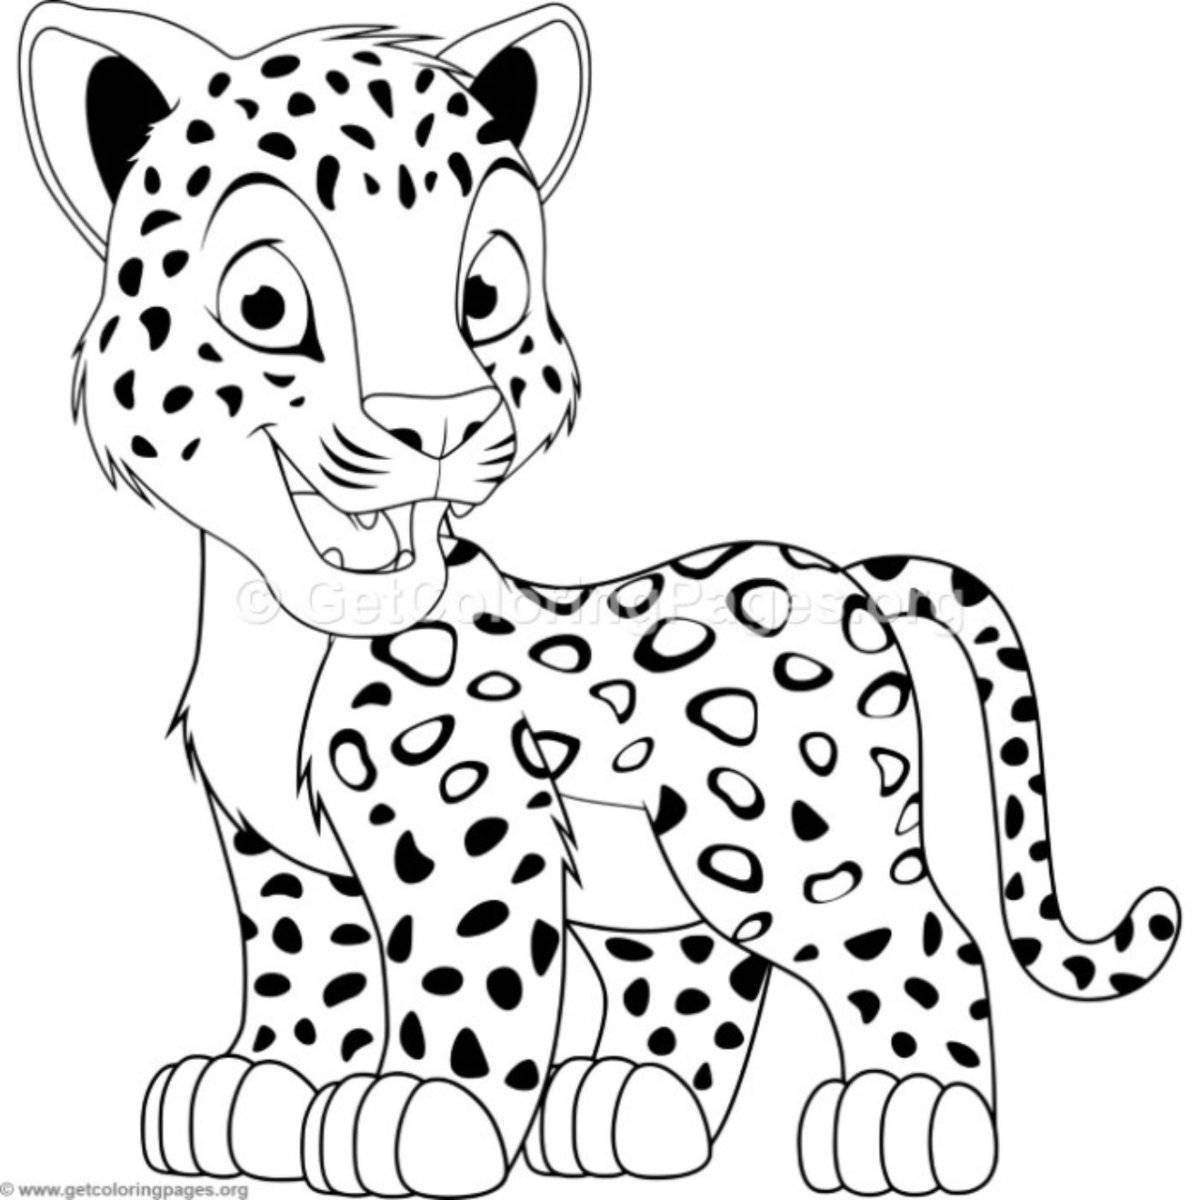 Fancy snow leopard coloring